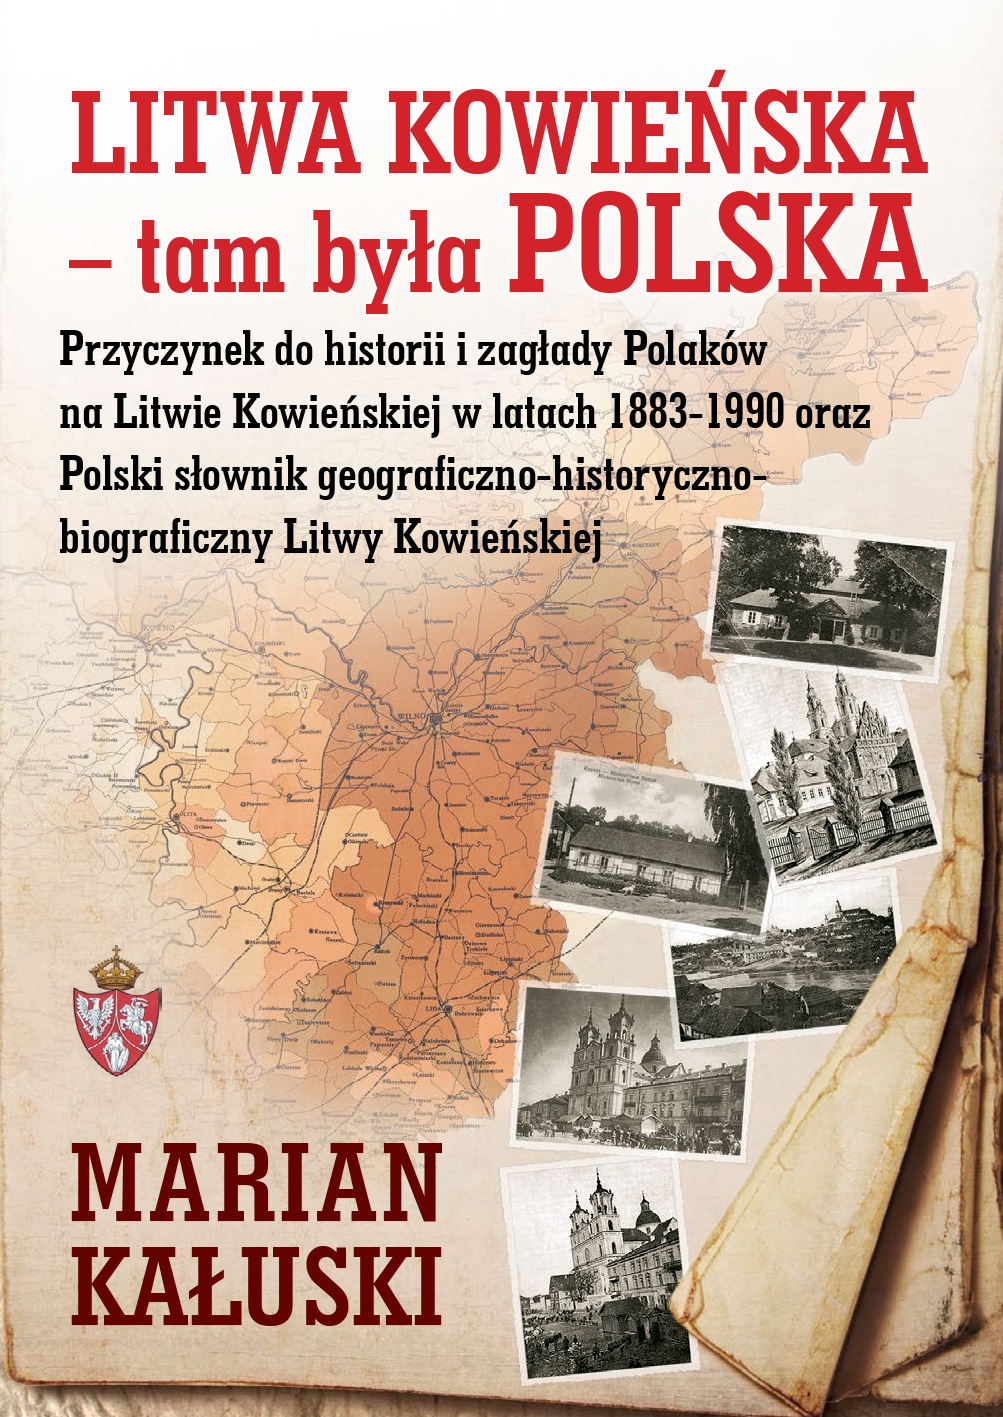 LITWA KOWIEŃSKA TAM BYŁA POLSKA - Marian Kałuski